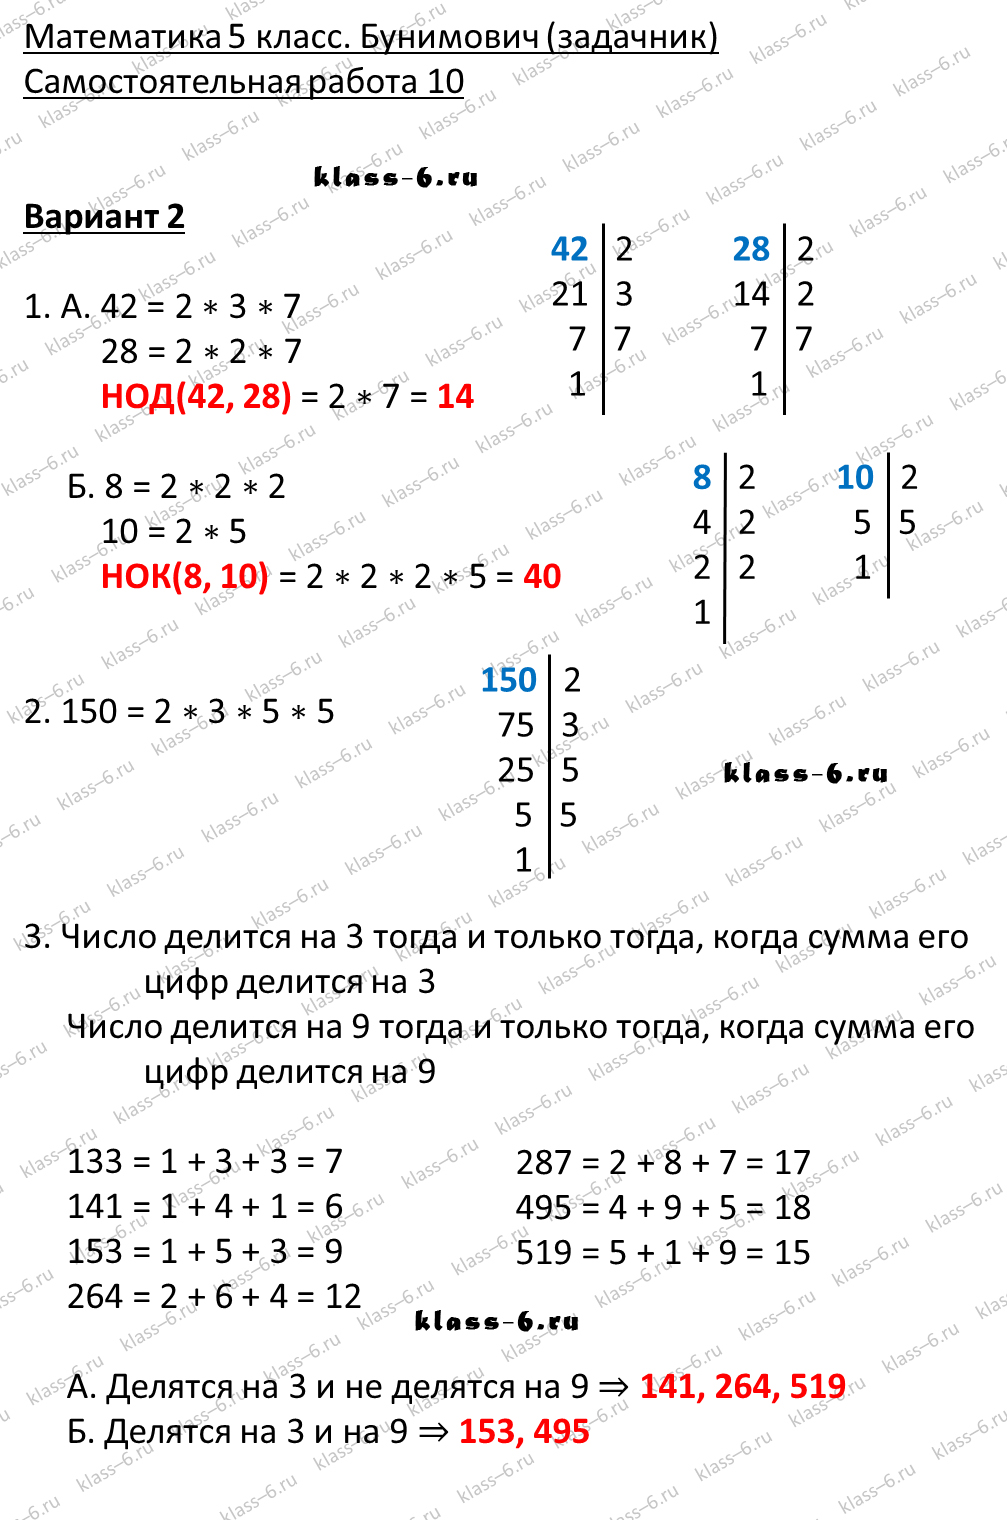 решебник и гдз по математике задачник Бунимович 5 класс самостоятельная работа 10-v2